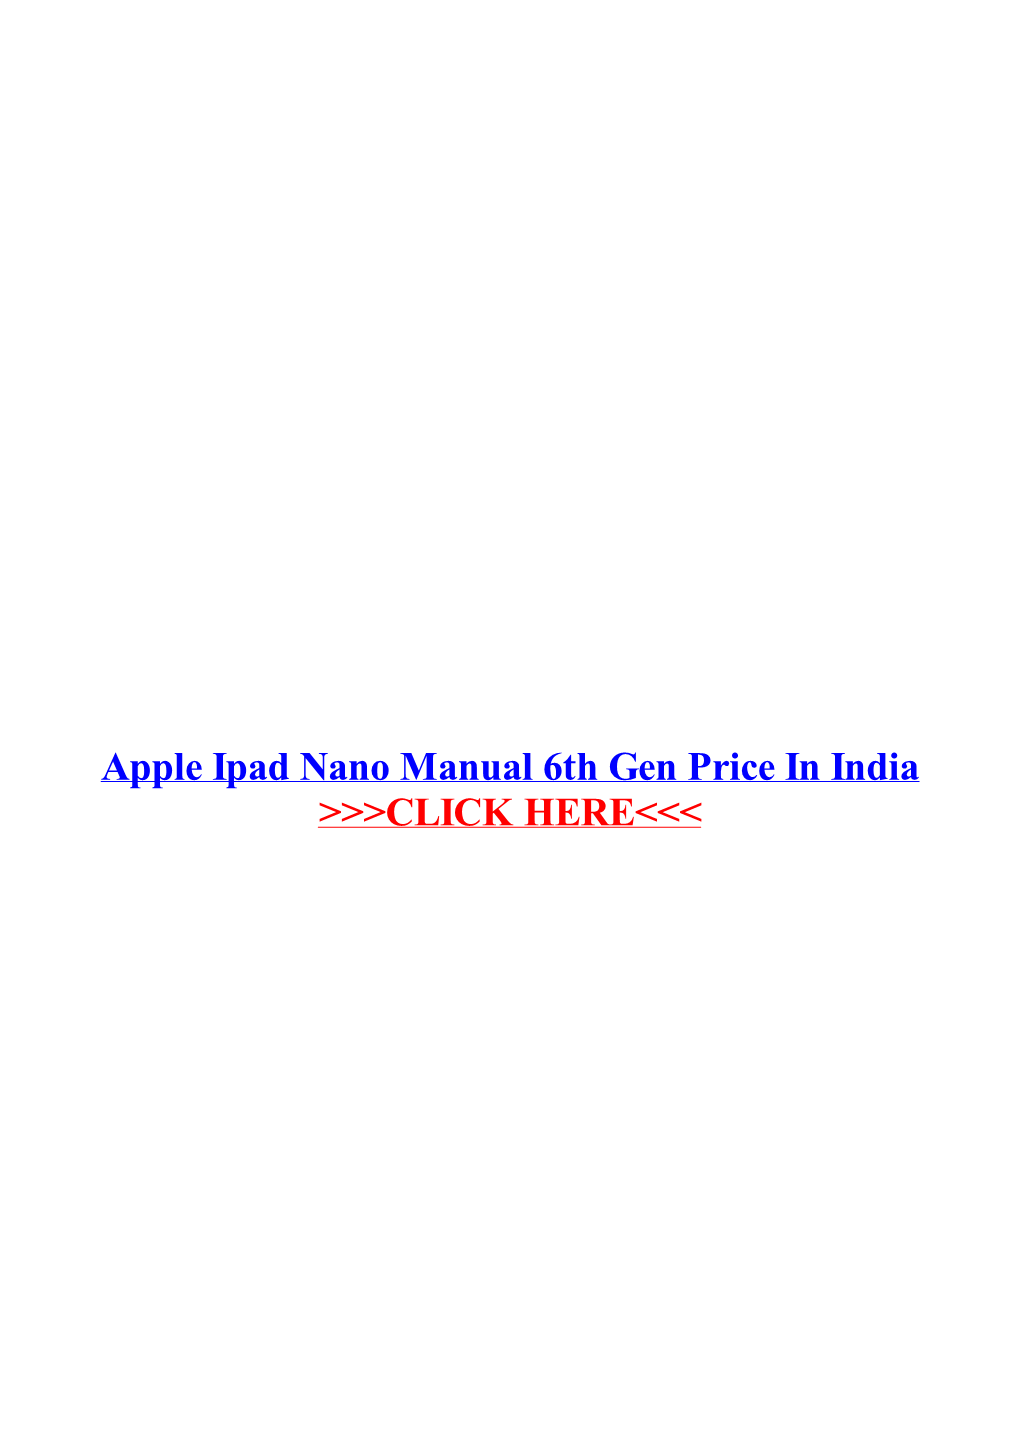 Apple Ipad Nano Manual 6Th Gen Price in India